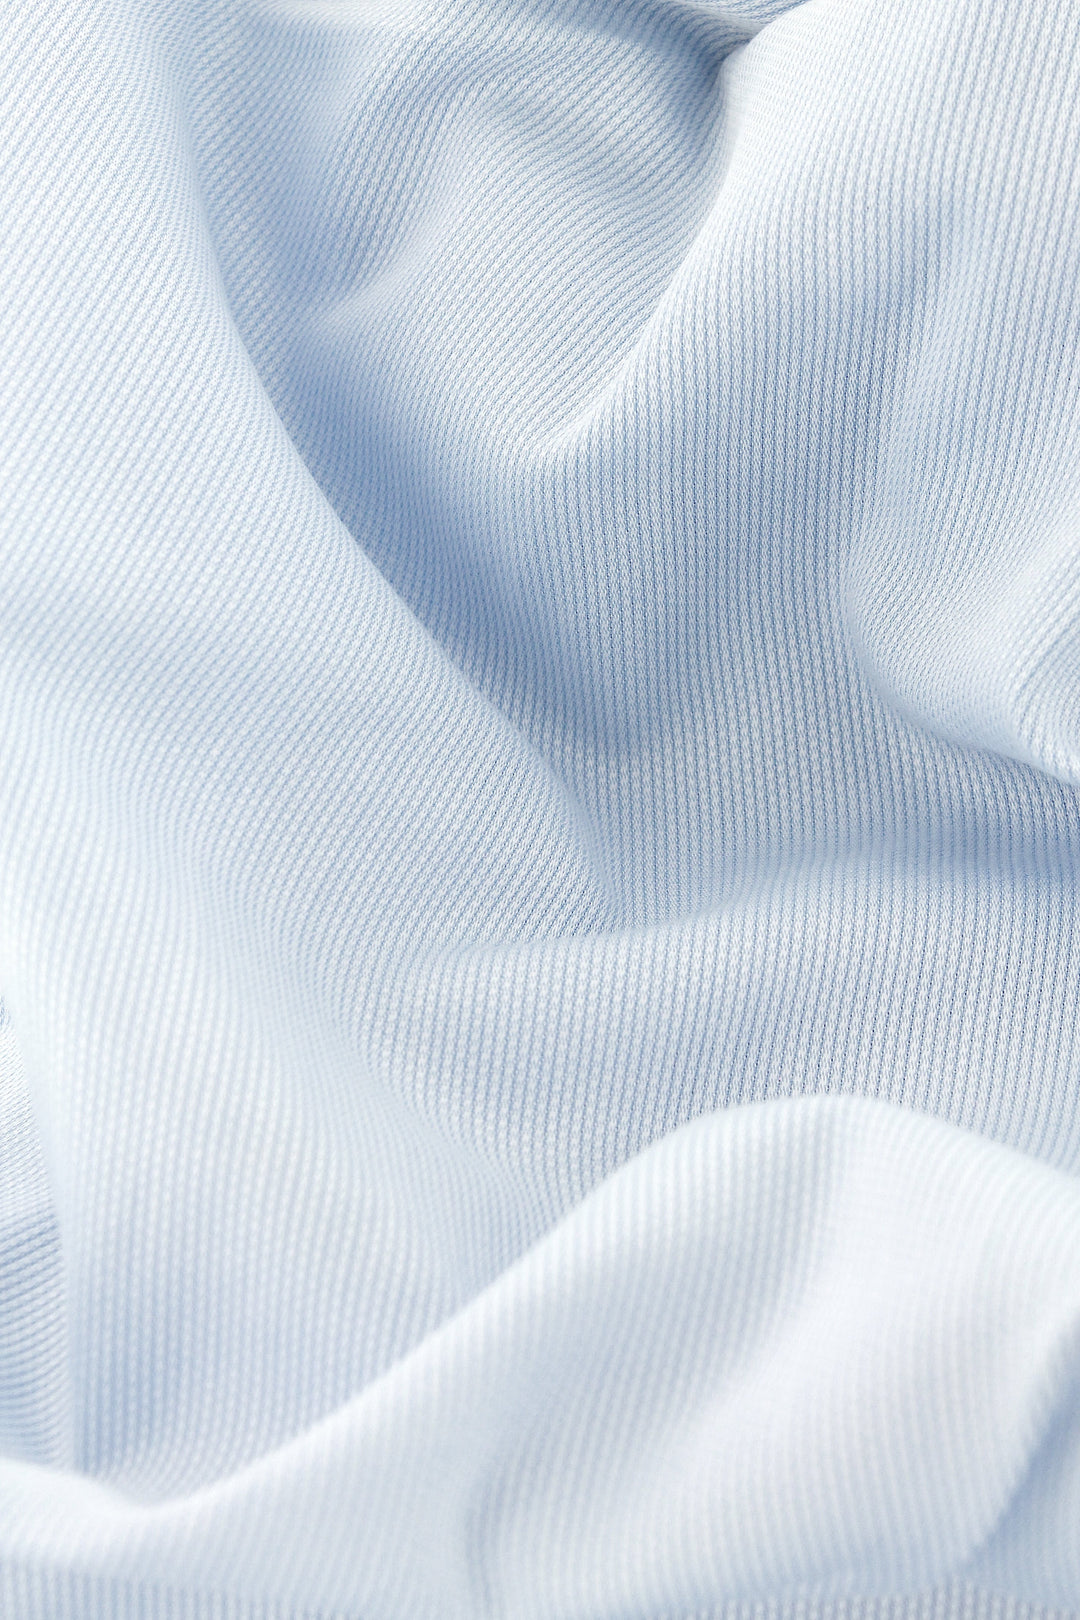 Chemise en piqué de coton bleu ciel col et poignets mousquetaires blancs